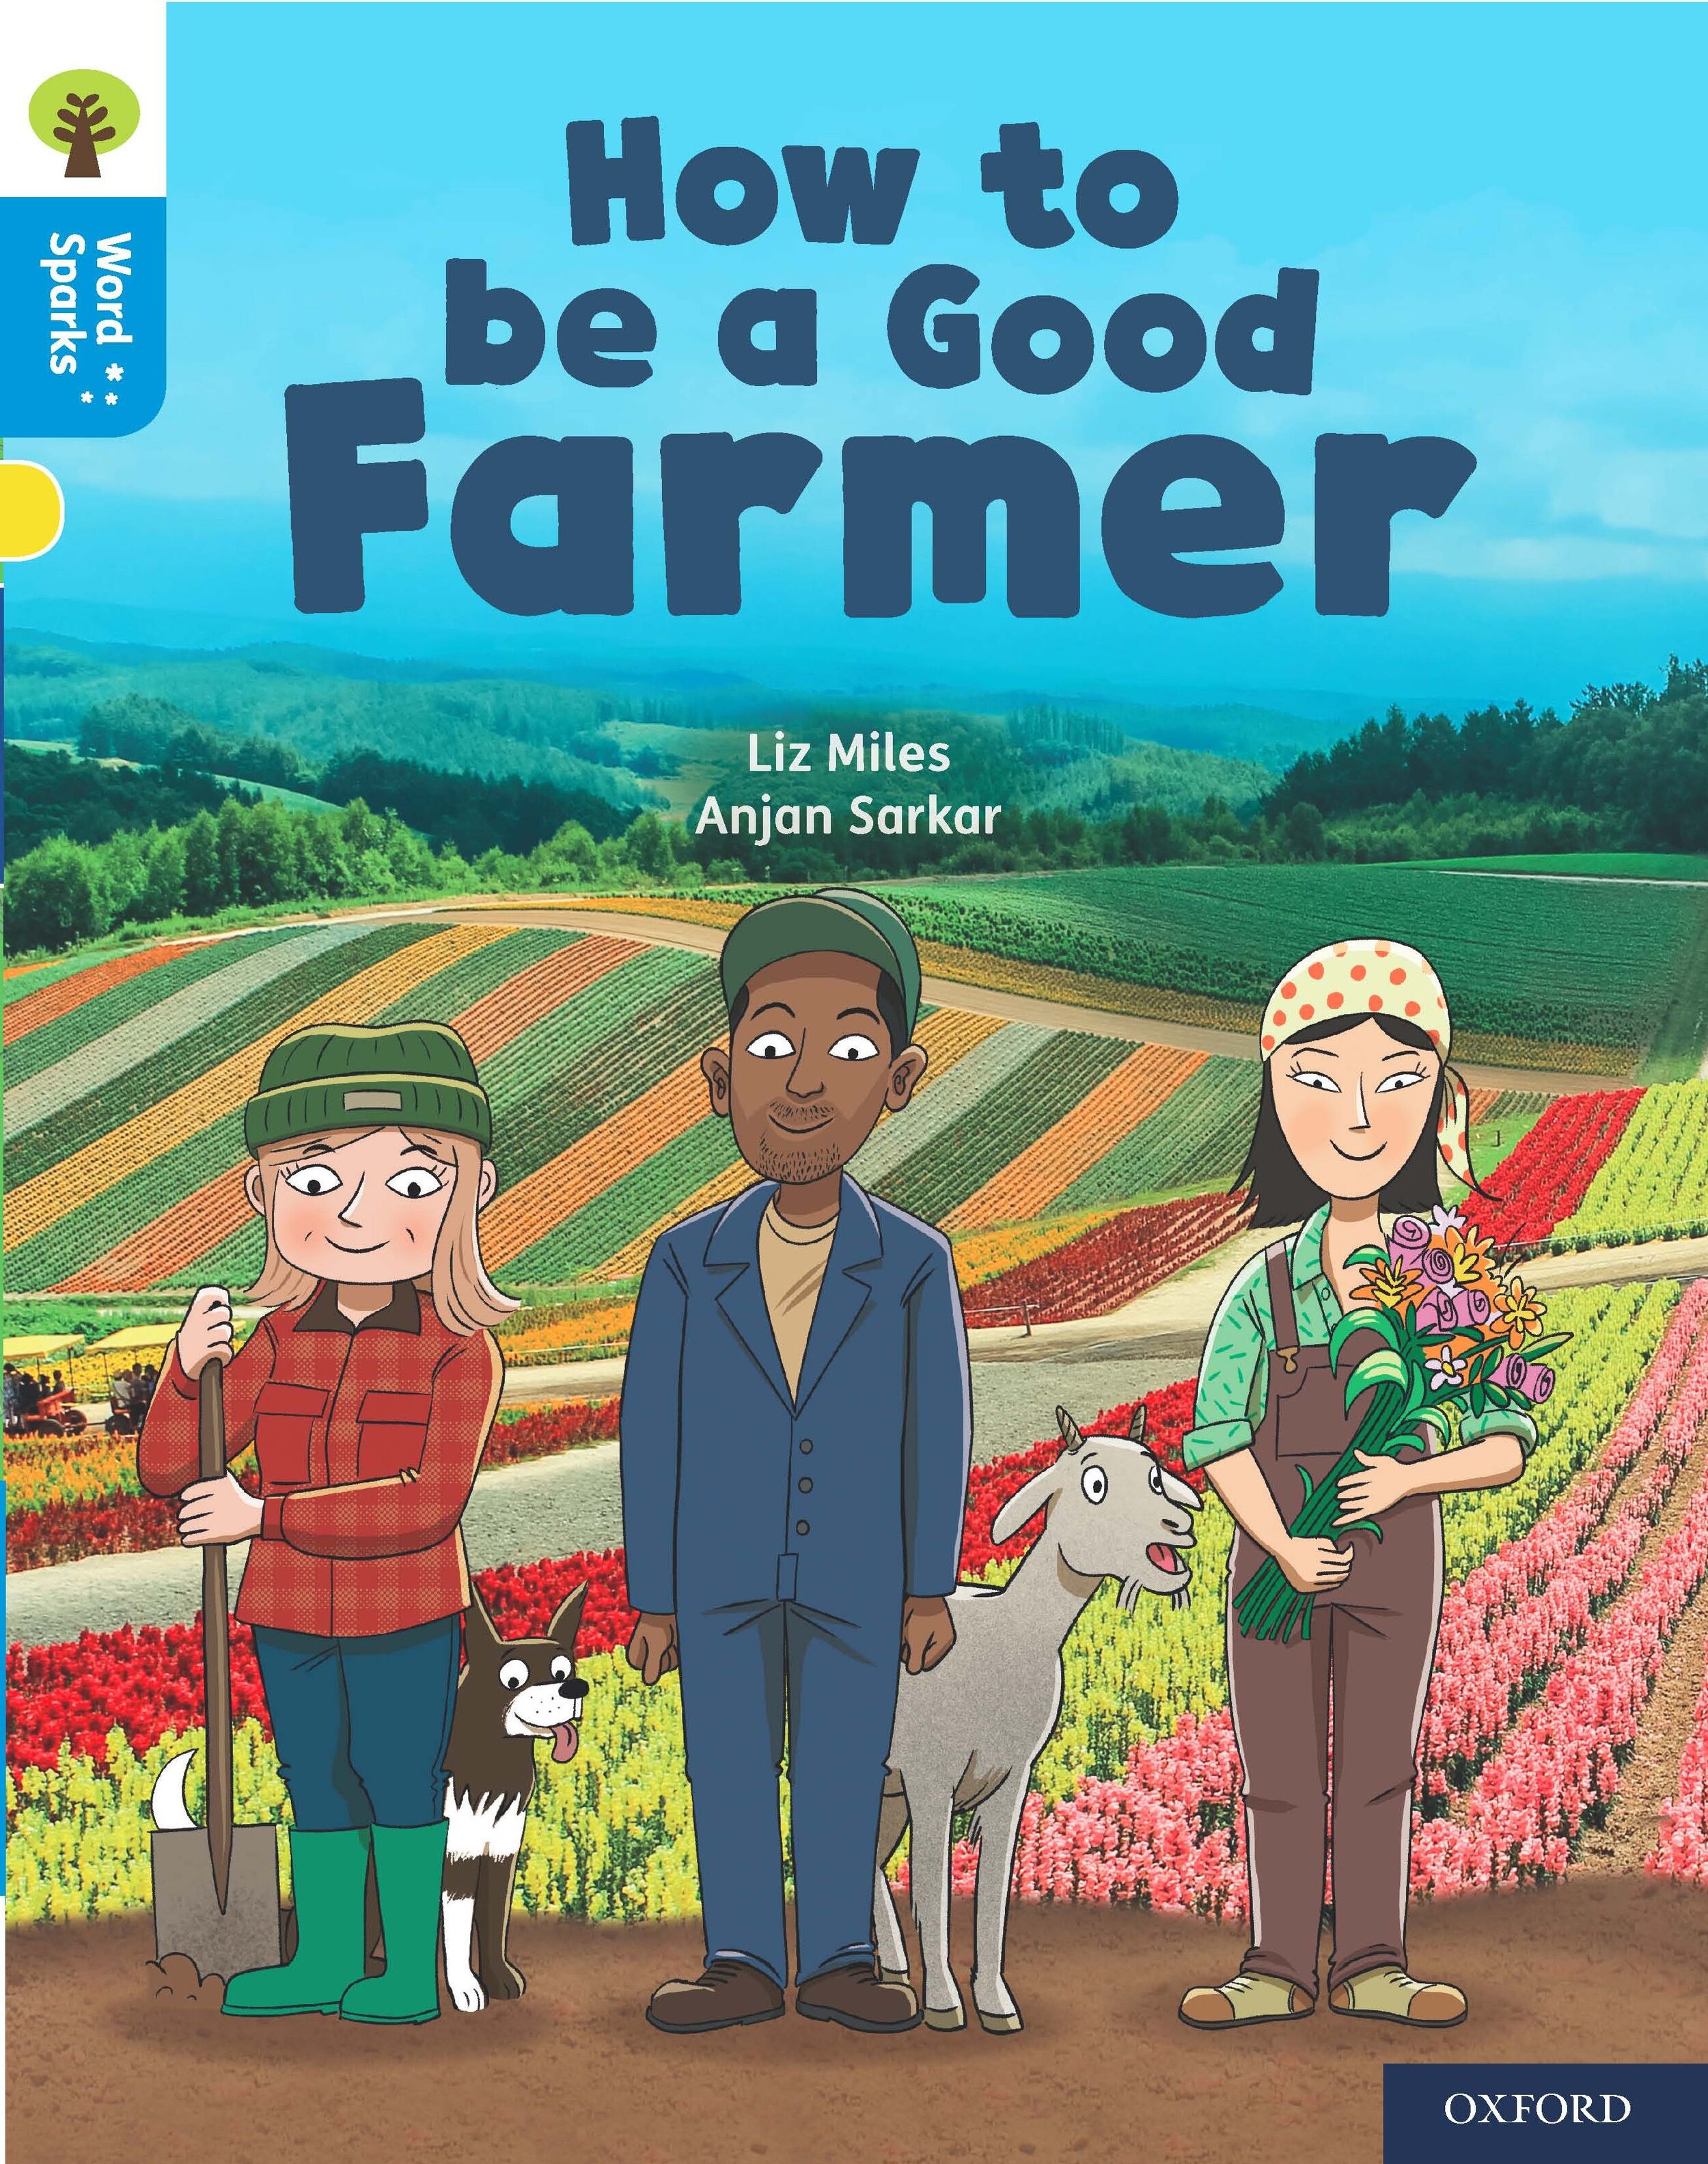 How to be a good farmer.jpg